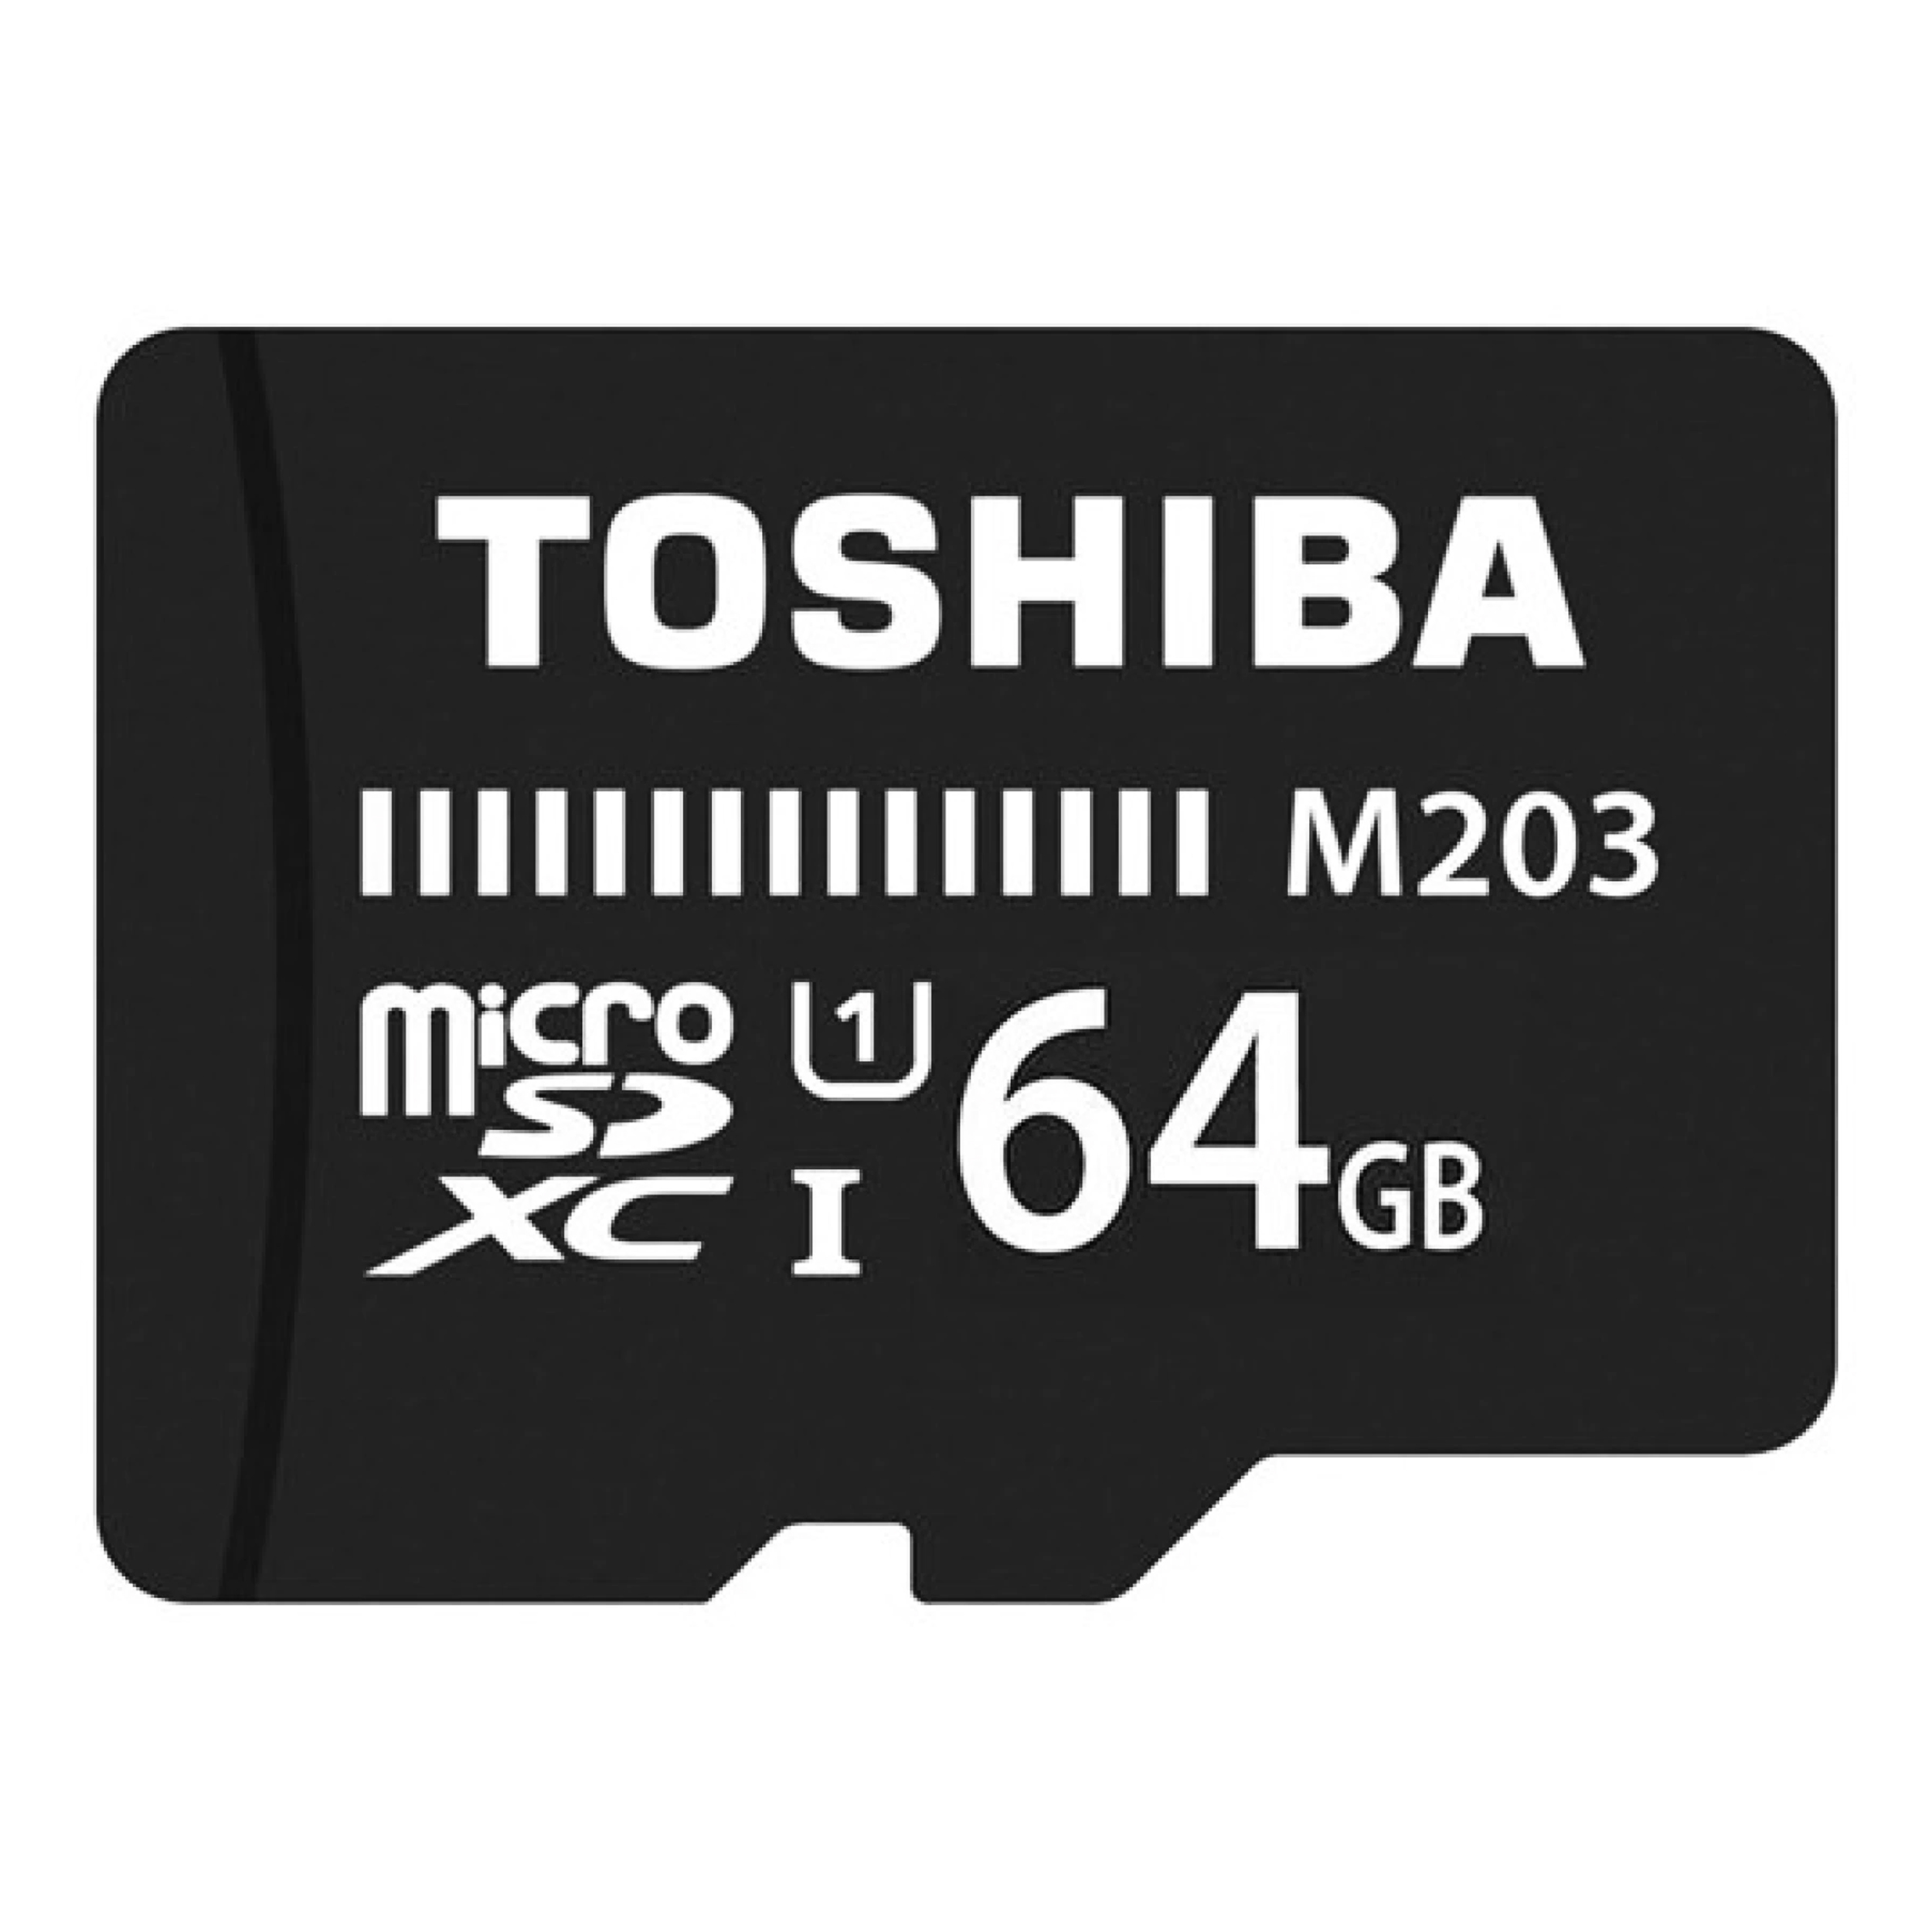 کارت حافظه microSDXC توشیبا مدل M203 کلاس 10 استاندارد UHS-I U1 سرعت 100MBps ظرفیت 64 گیگابایت همراه با آداپتور